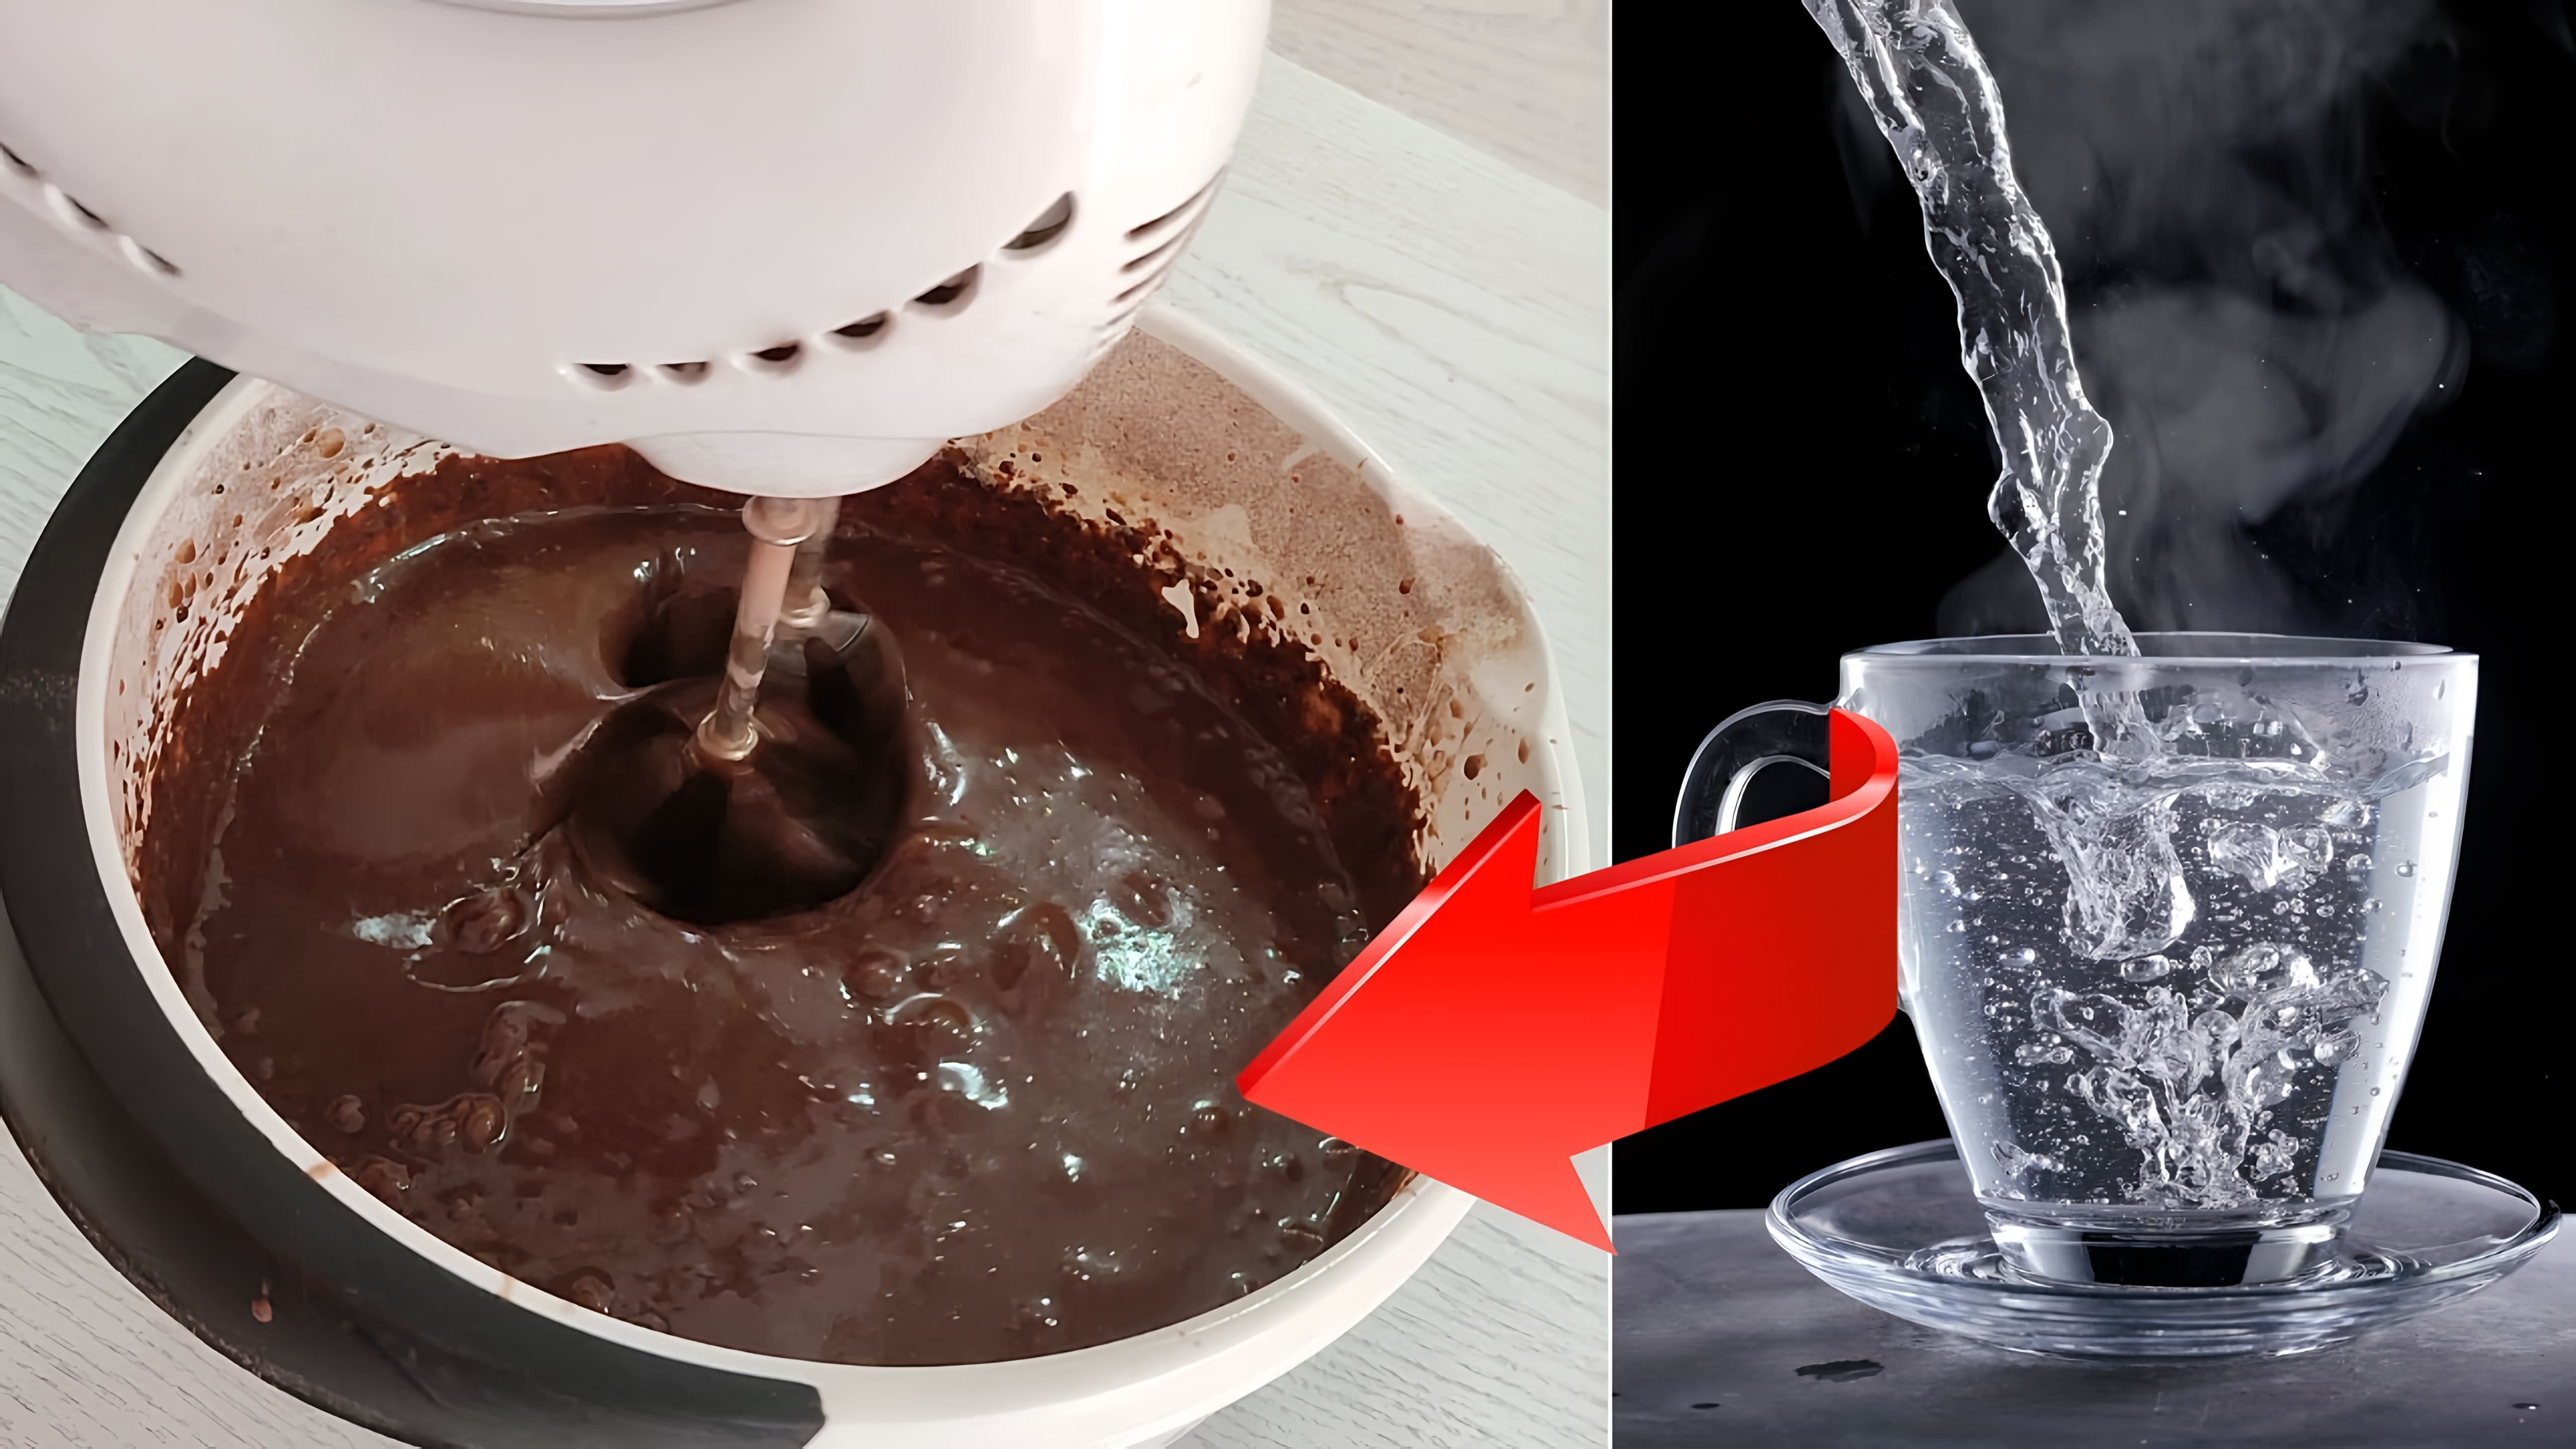 В данном видео демонстрируется процесс приготовления шоколадного бисквита на кипятке